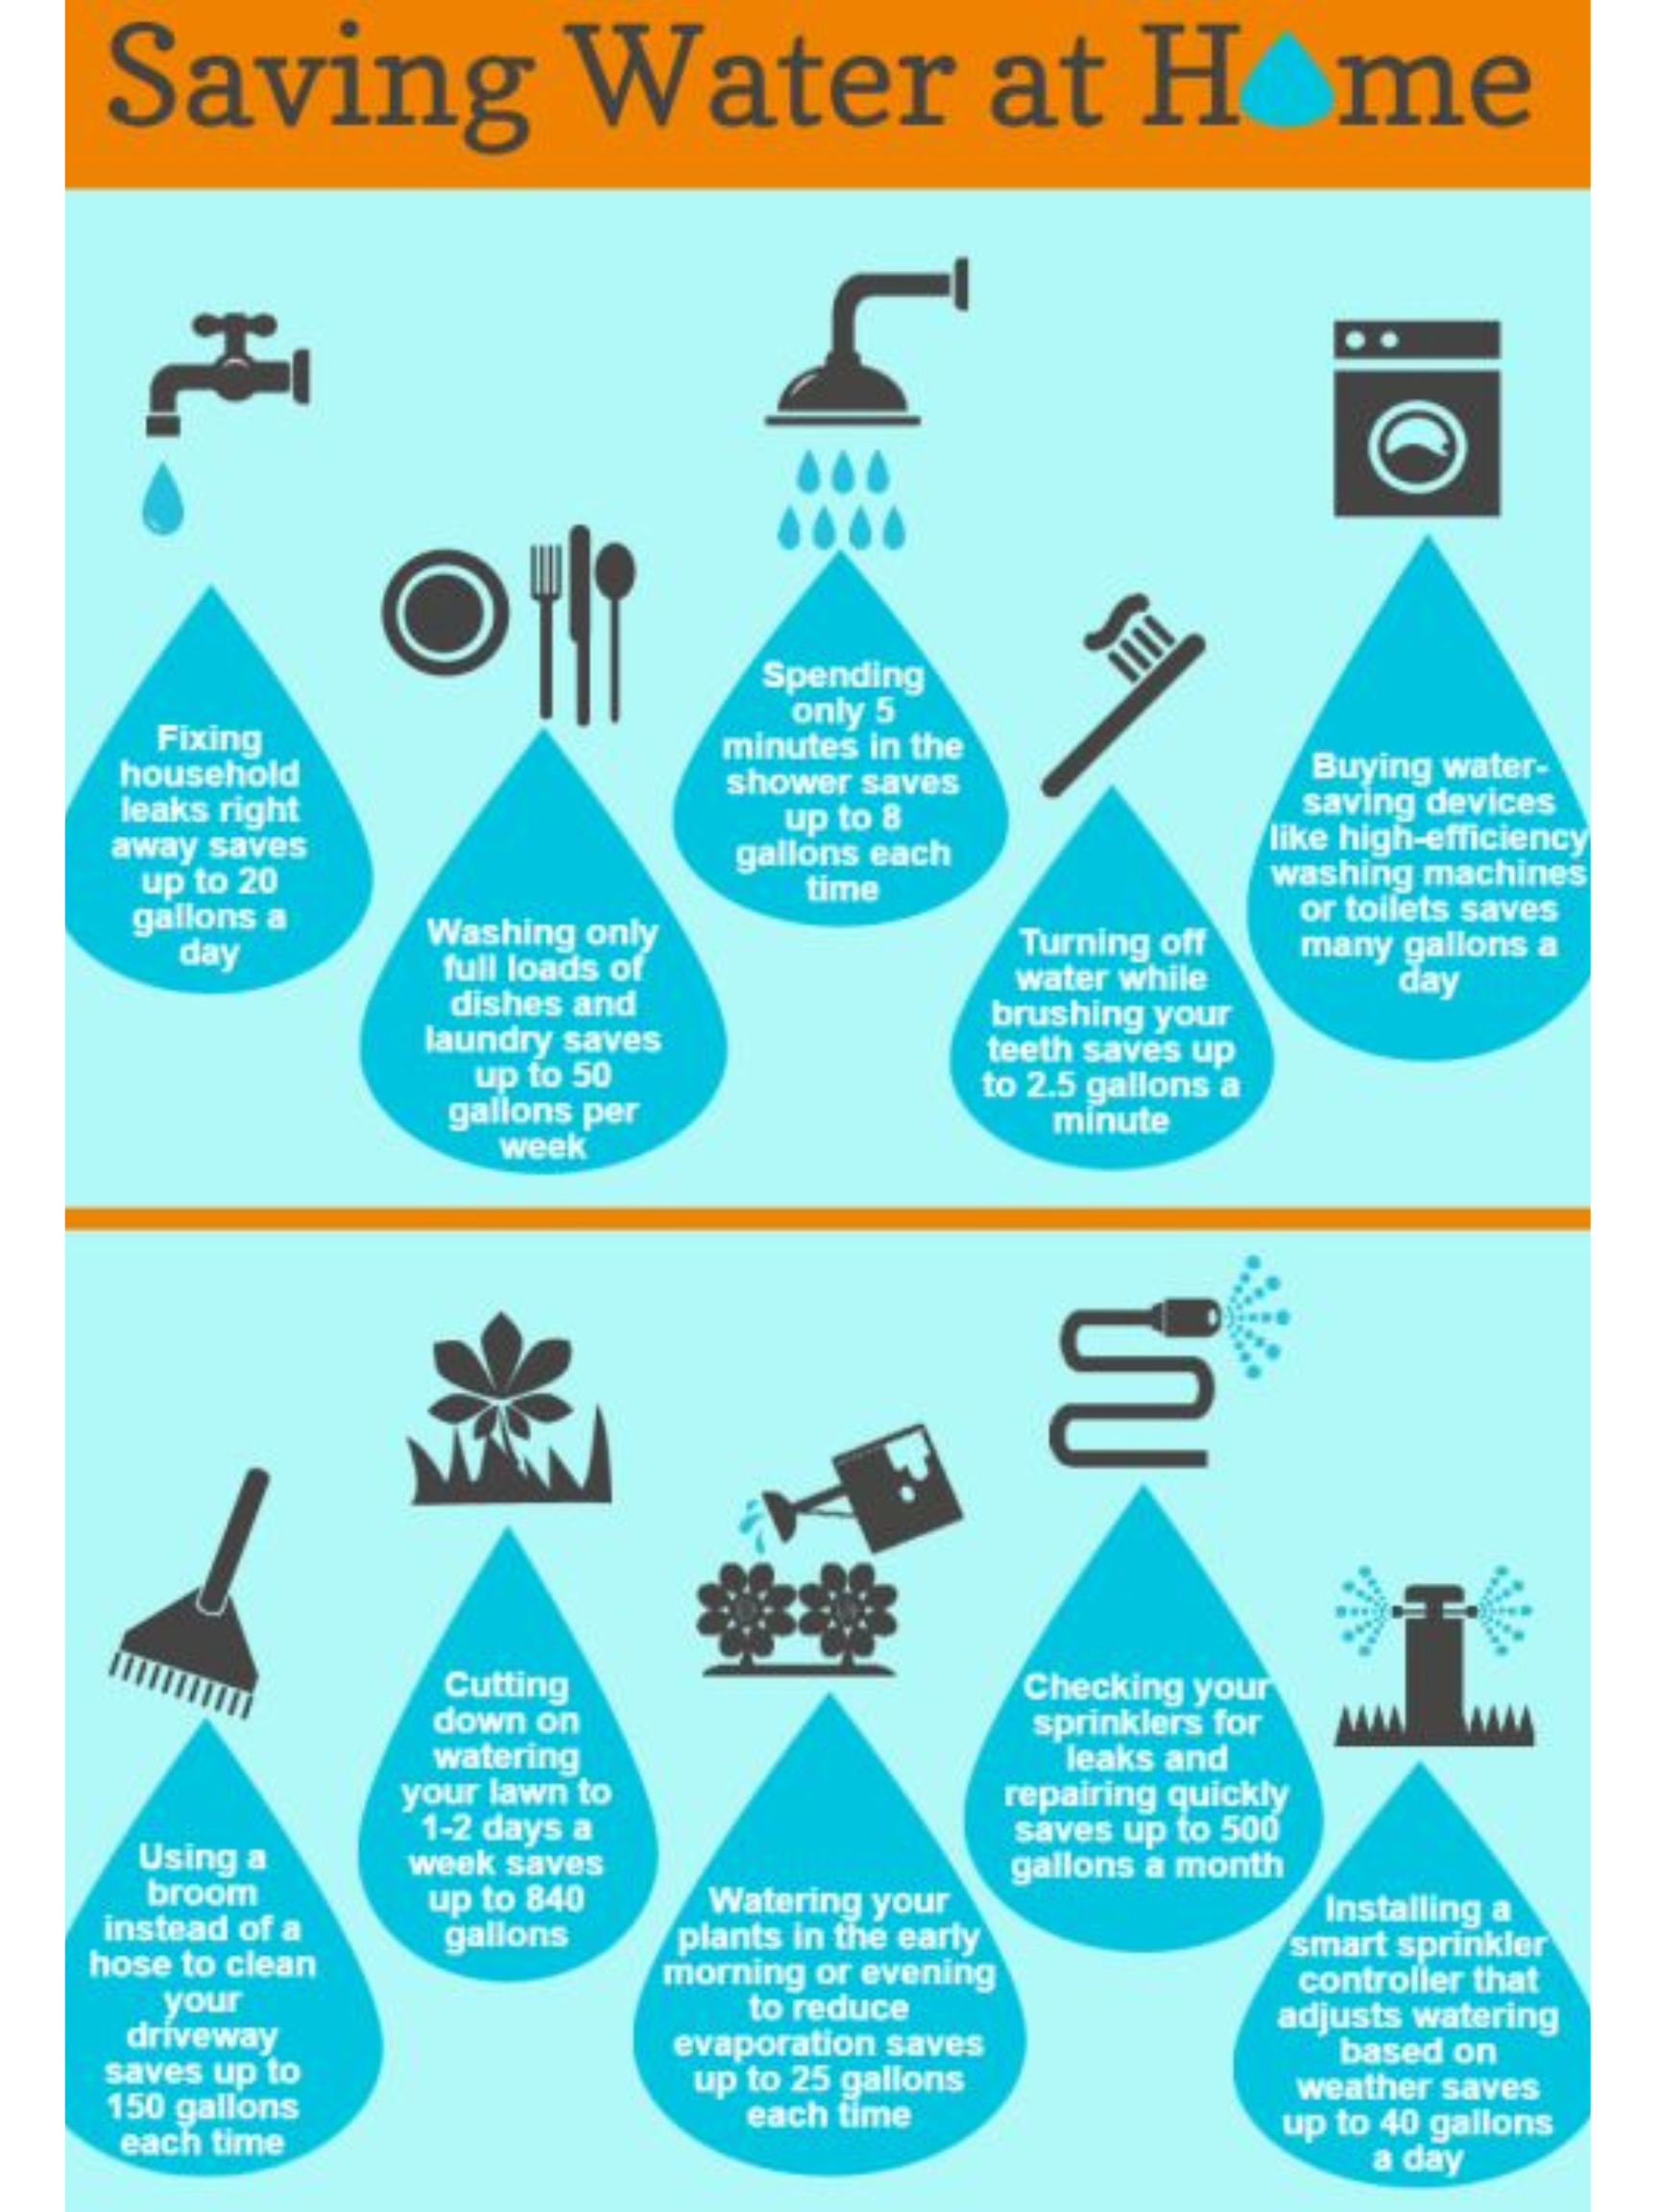 Saving Water at home